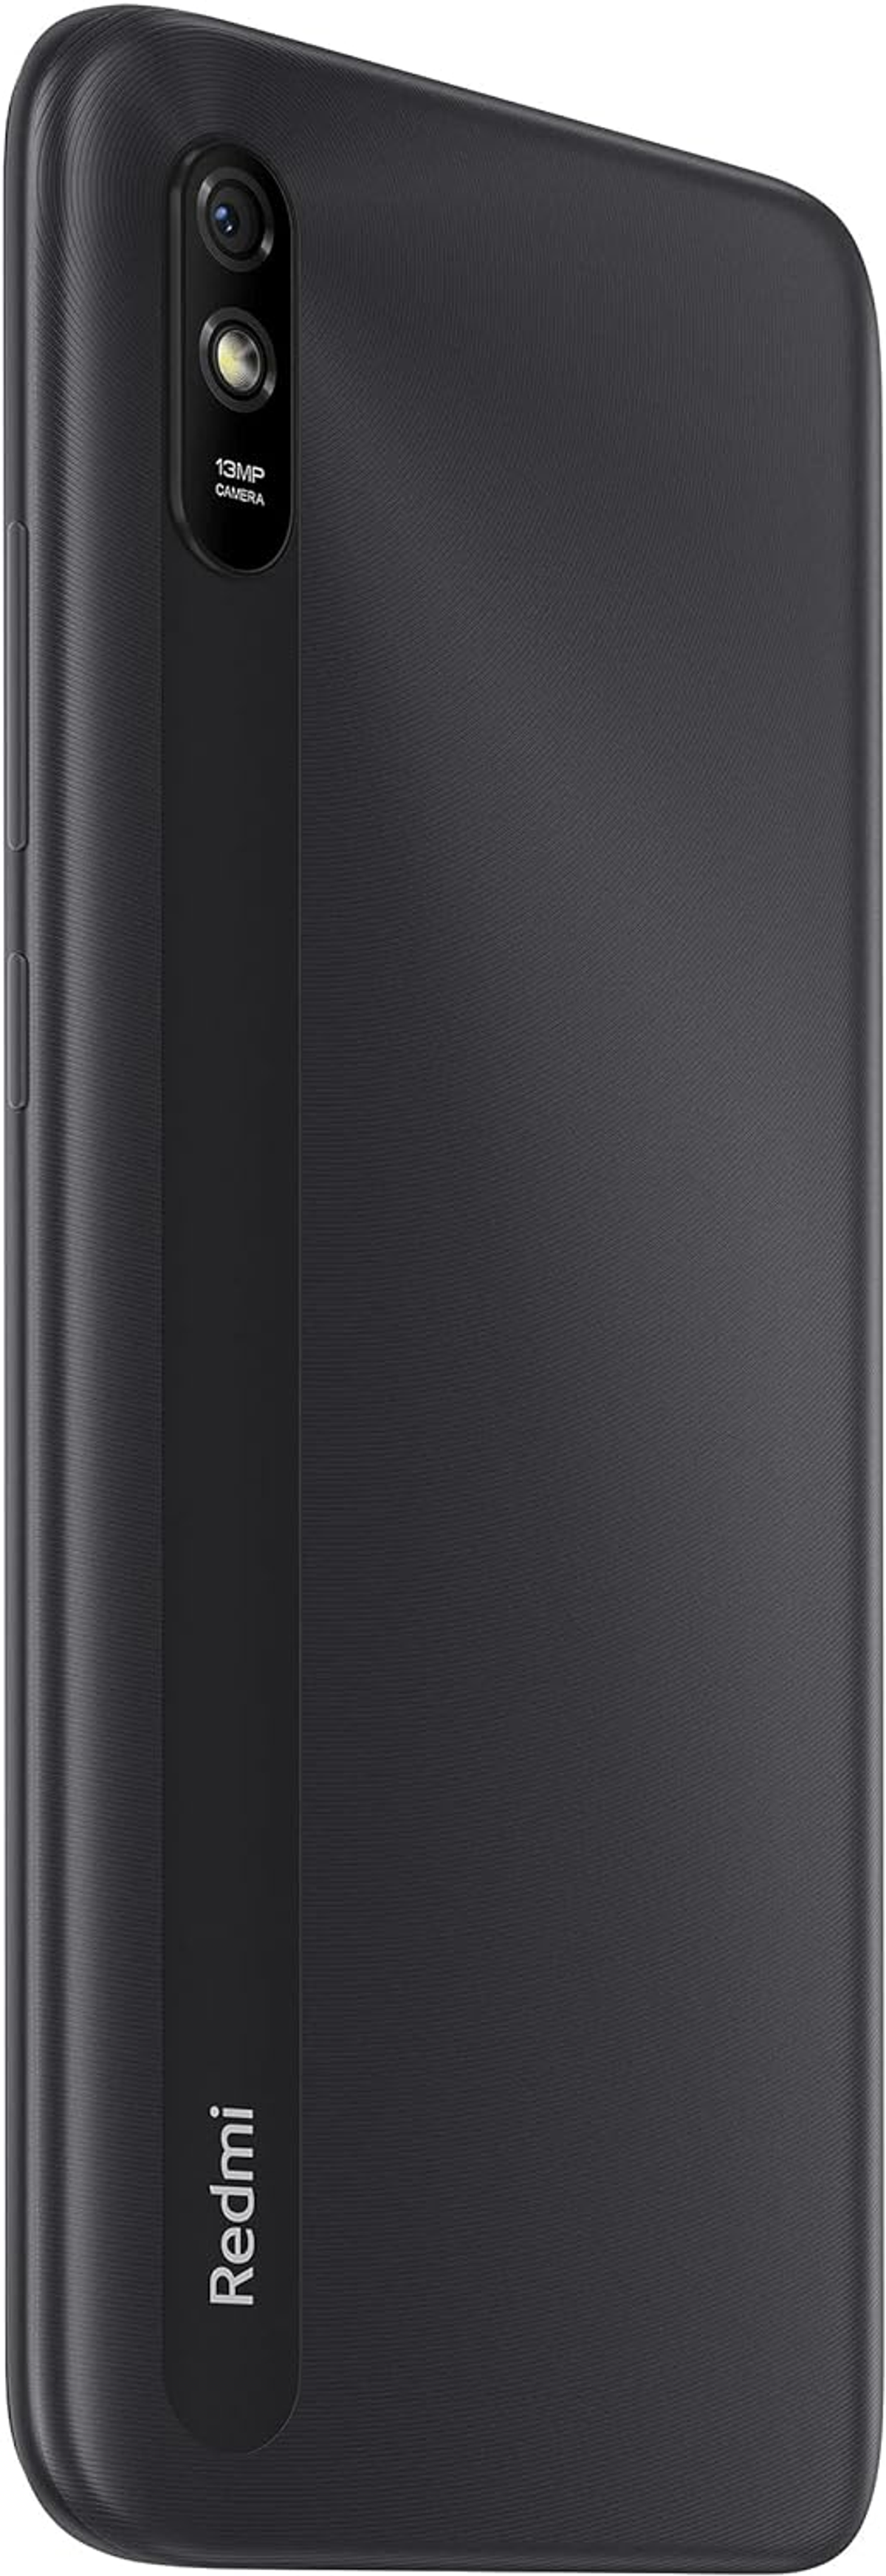 XIAOMI Redmi 9A SIM GB Dual Grau 32